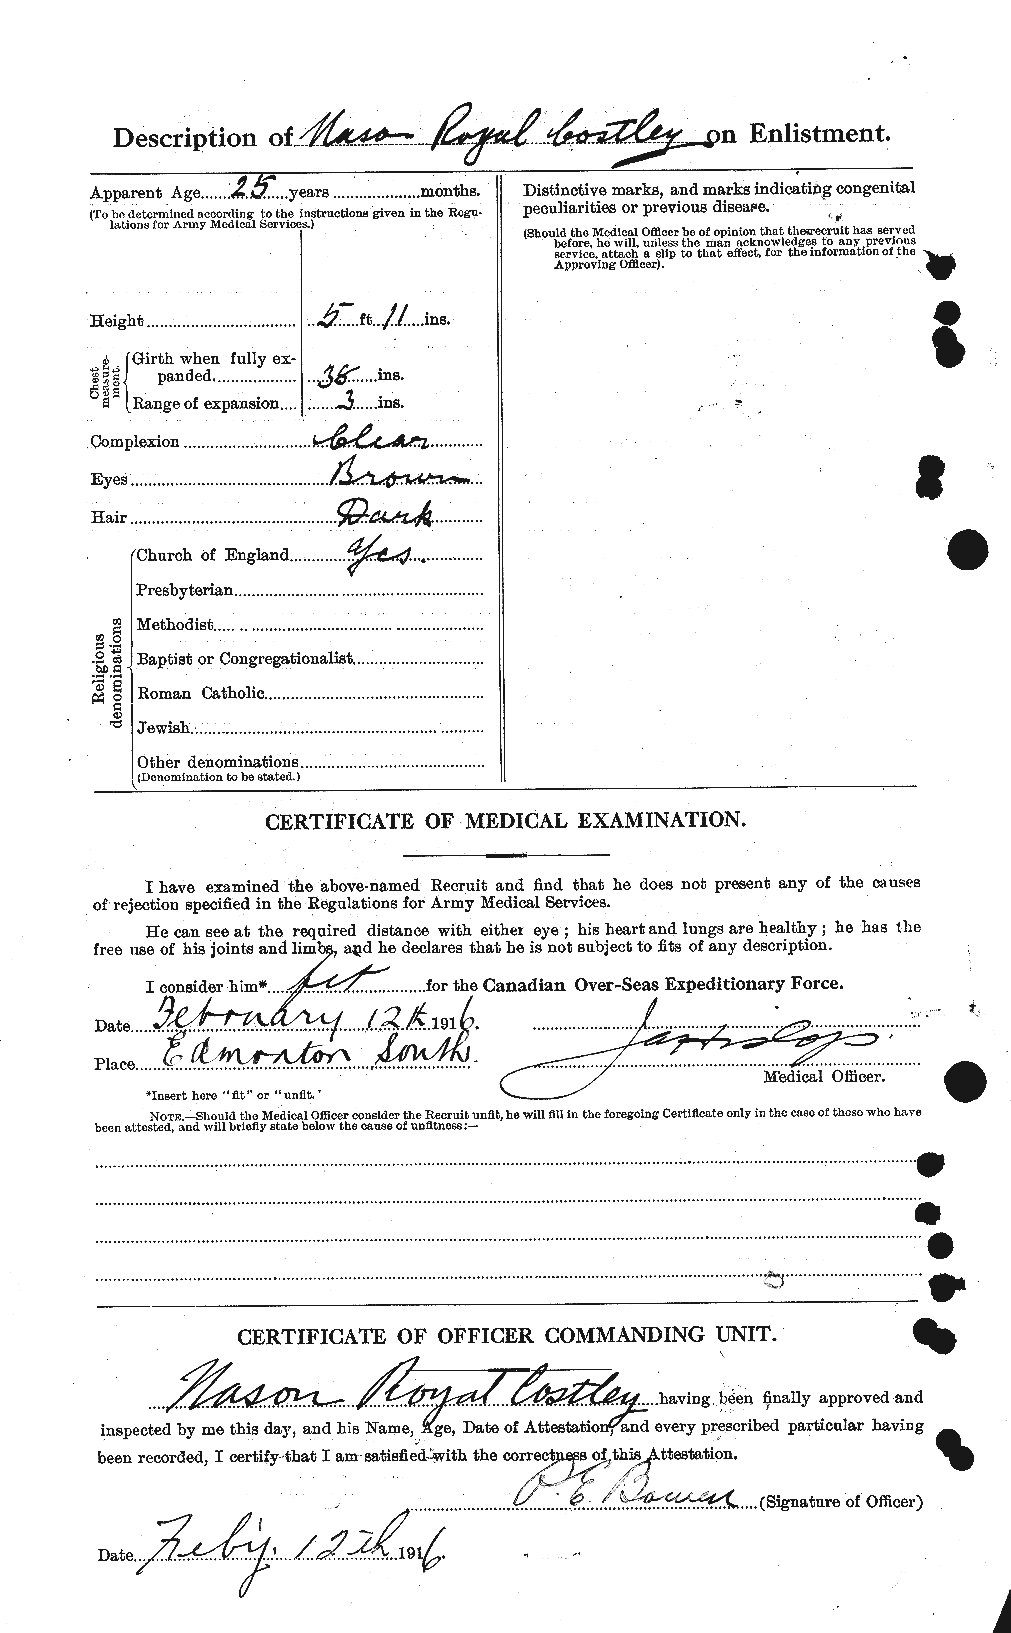 Dossiers du Personnel de la Première Guerre mondiale - CEC 059074b